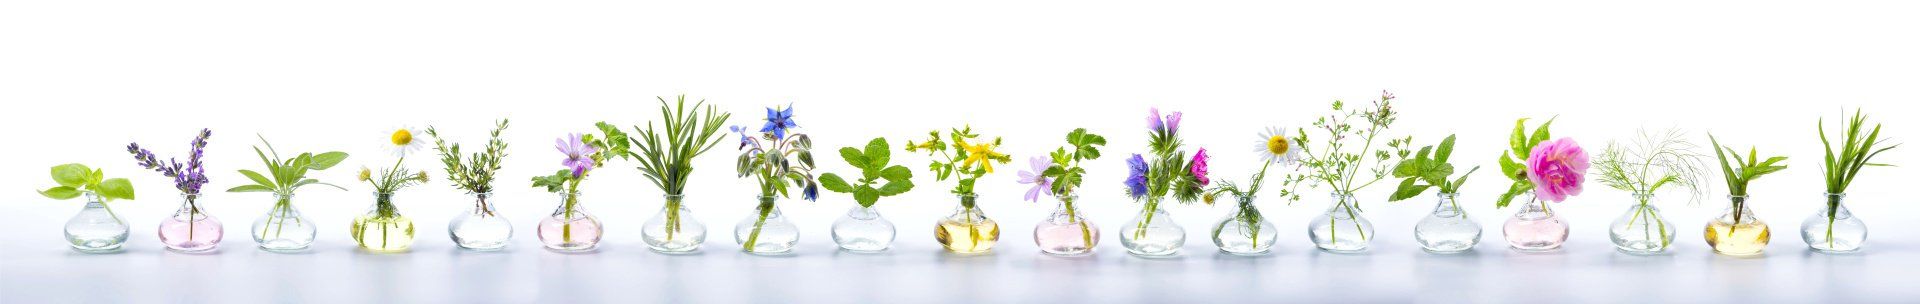 eine Reihe von kleinen Glasvasen mit Kräutern und Blumen